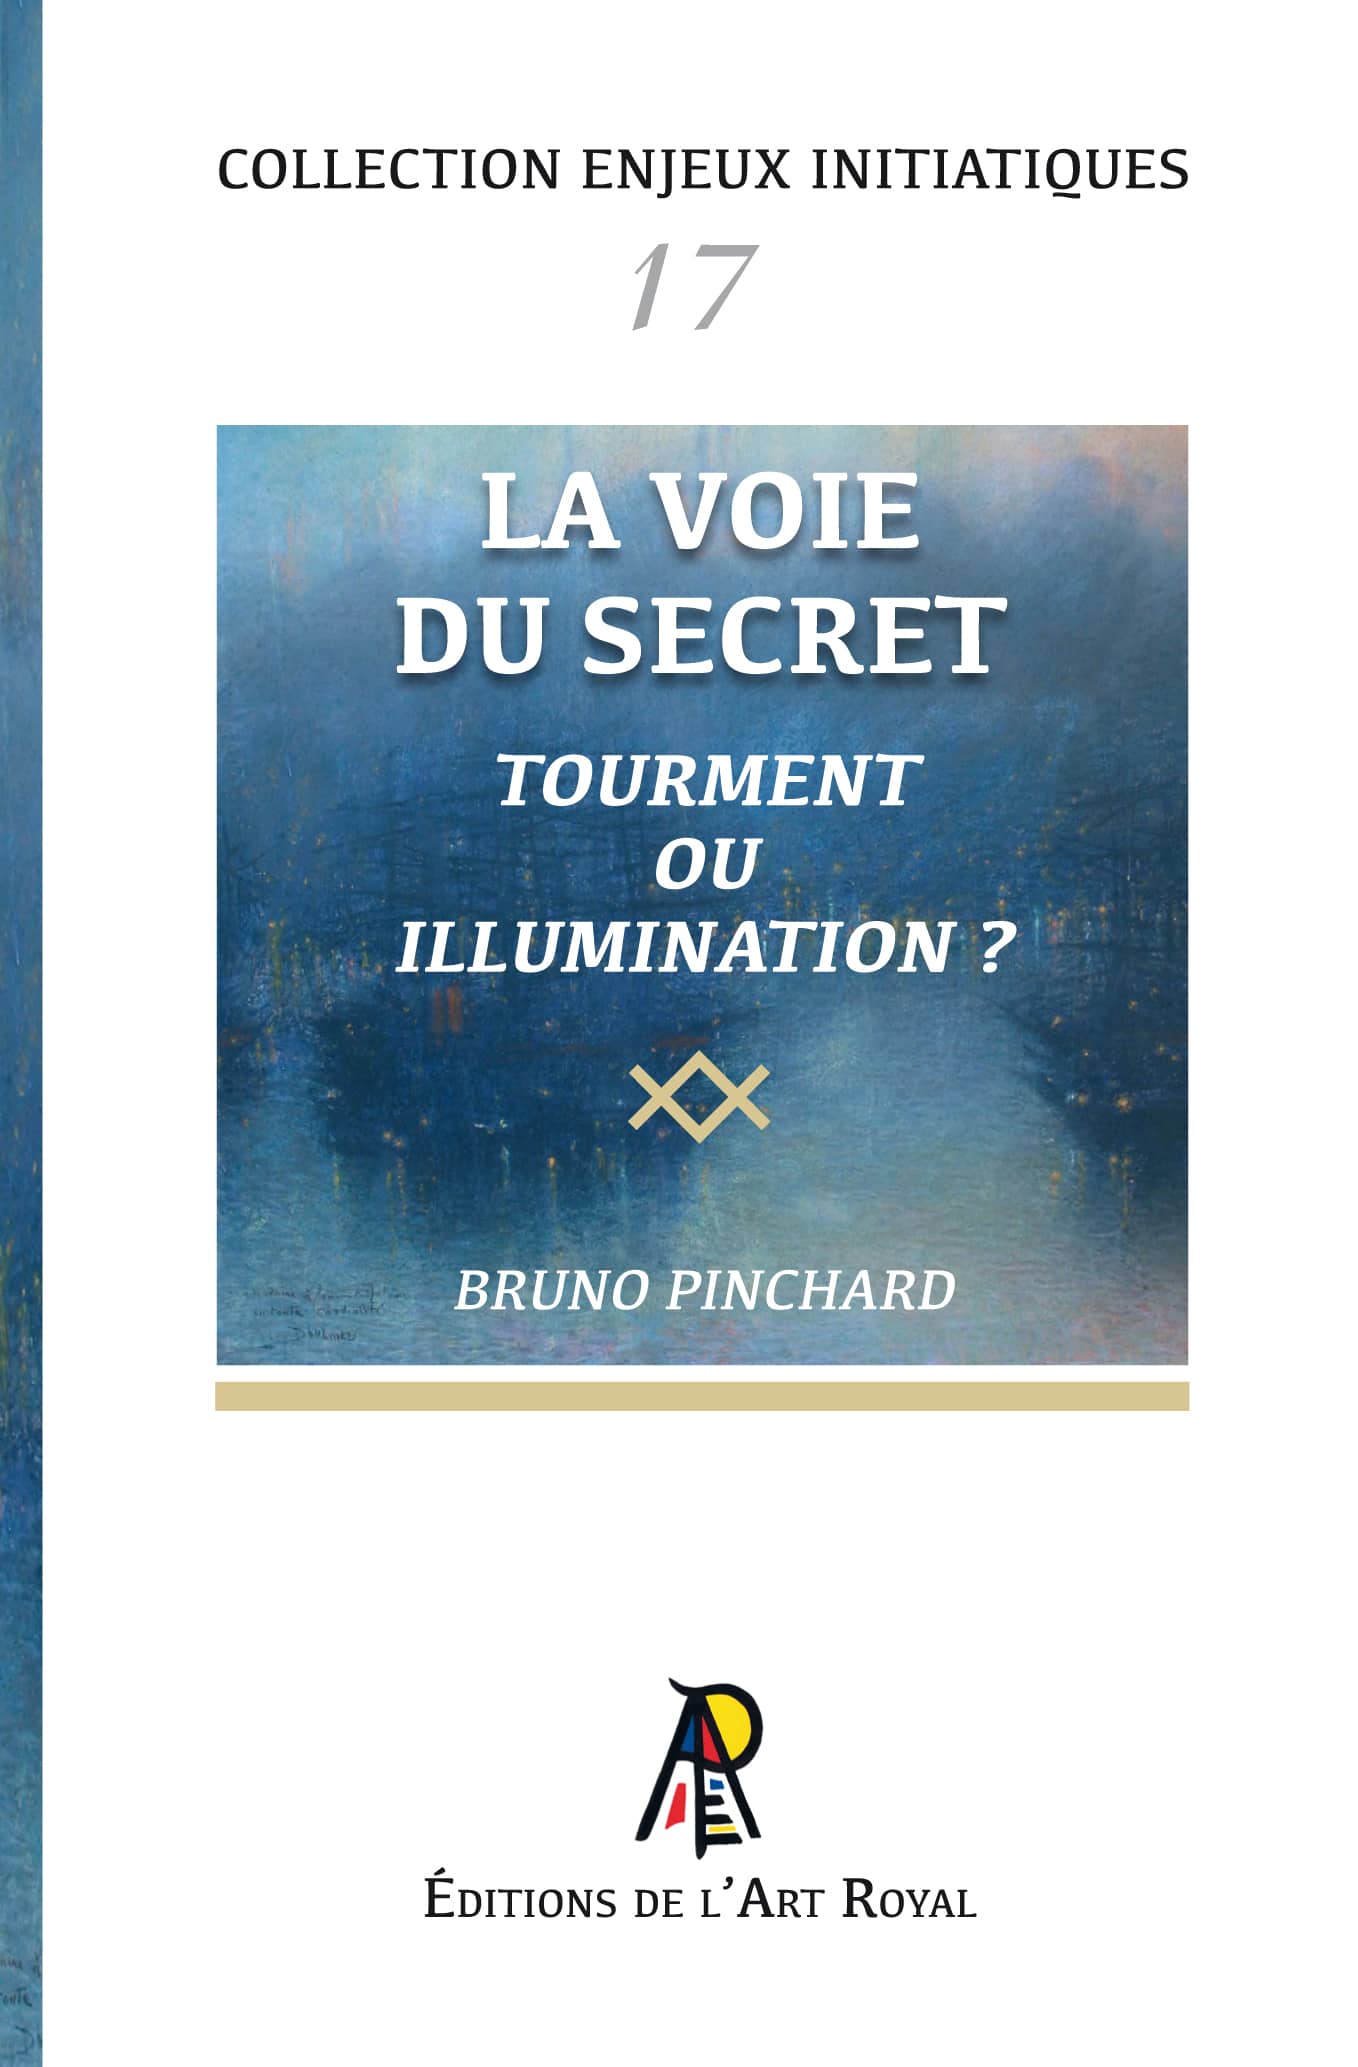 La voie du secret - Tourment ou illumination ?, Bruno Pinchard